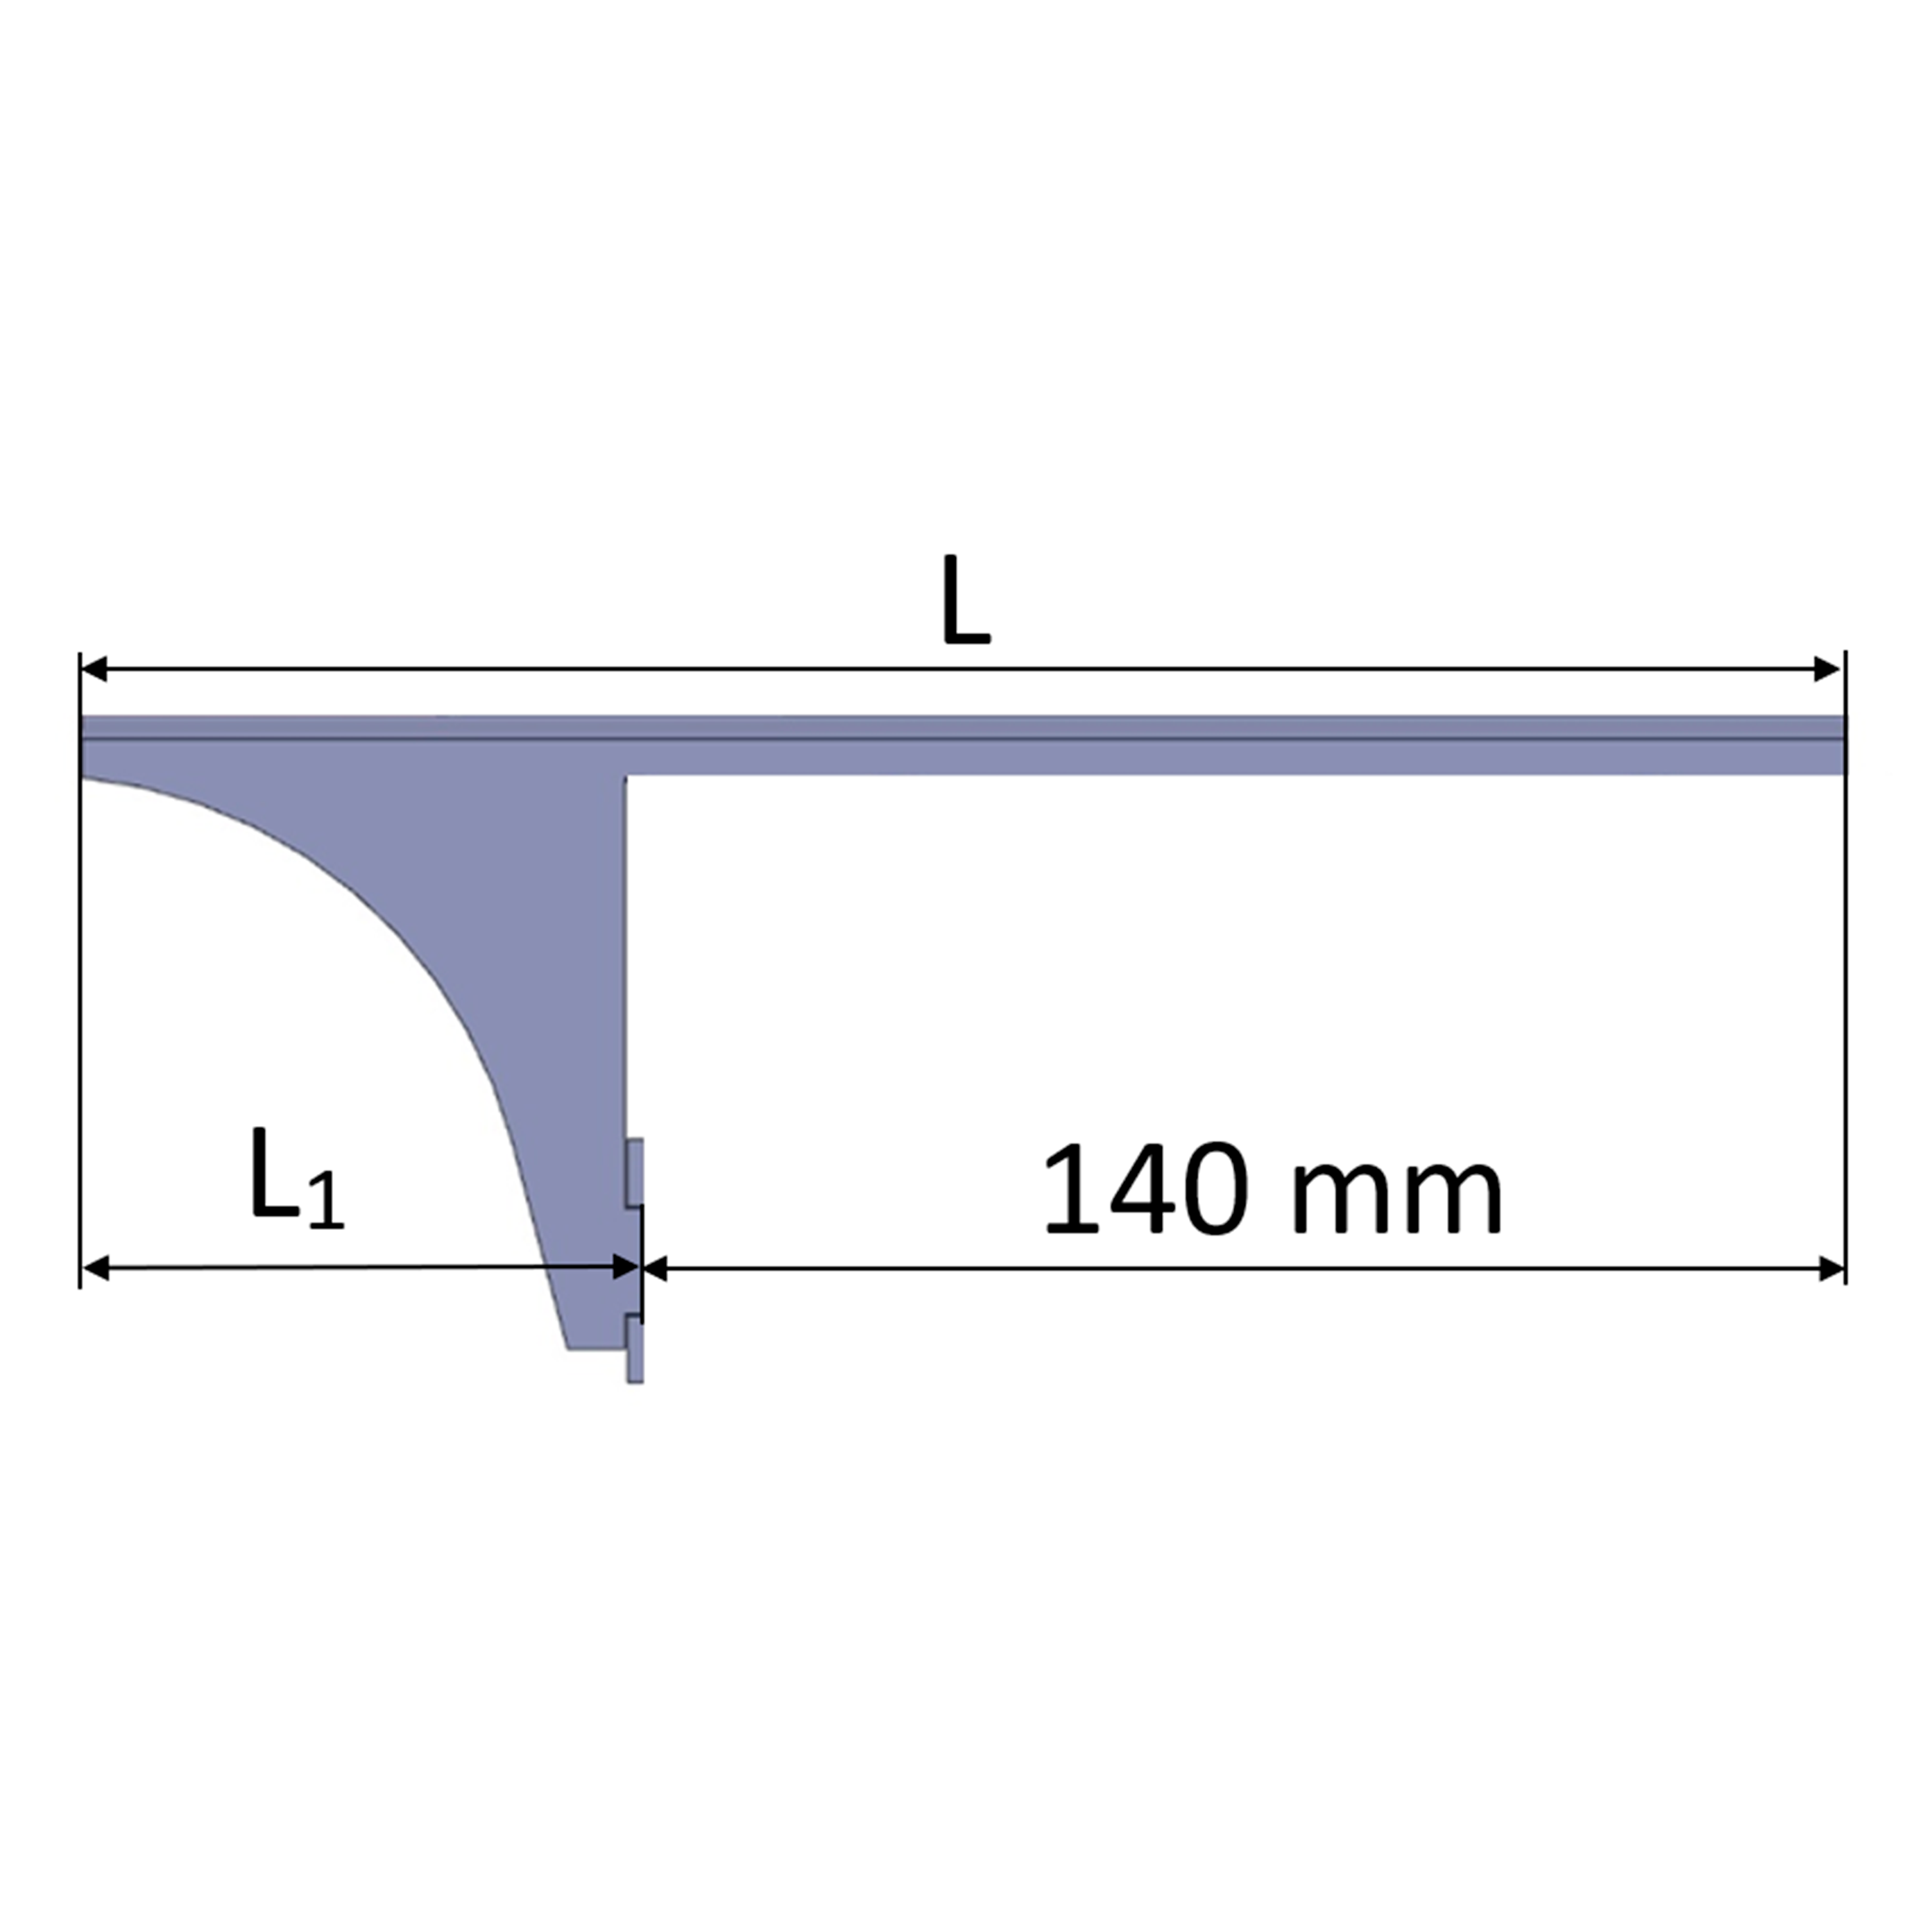 SL-Bracket - Heavy Load Bracket measurements